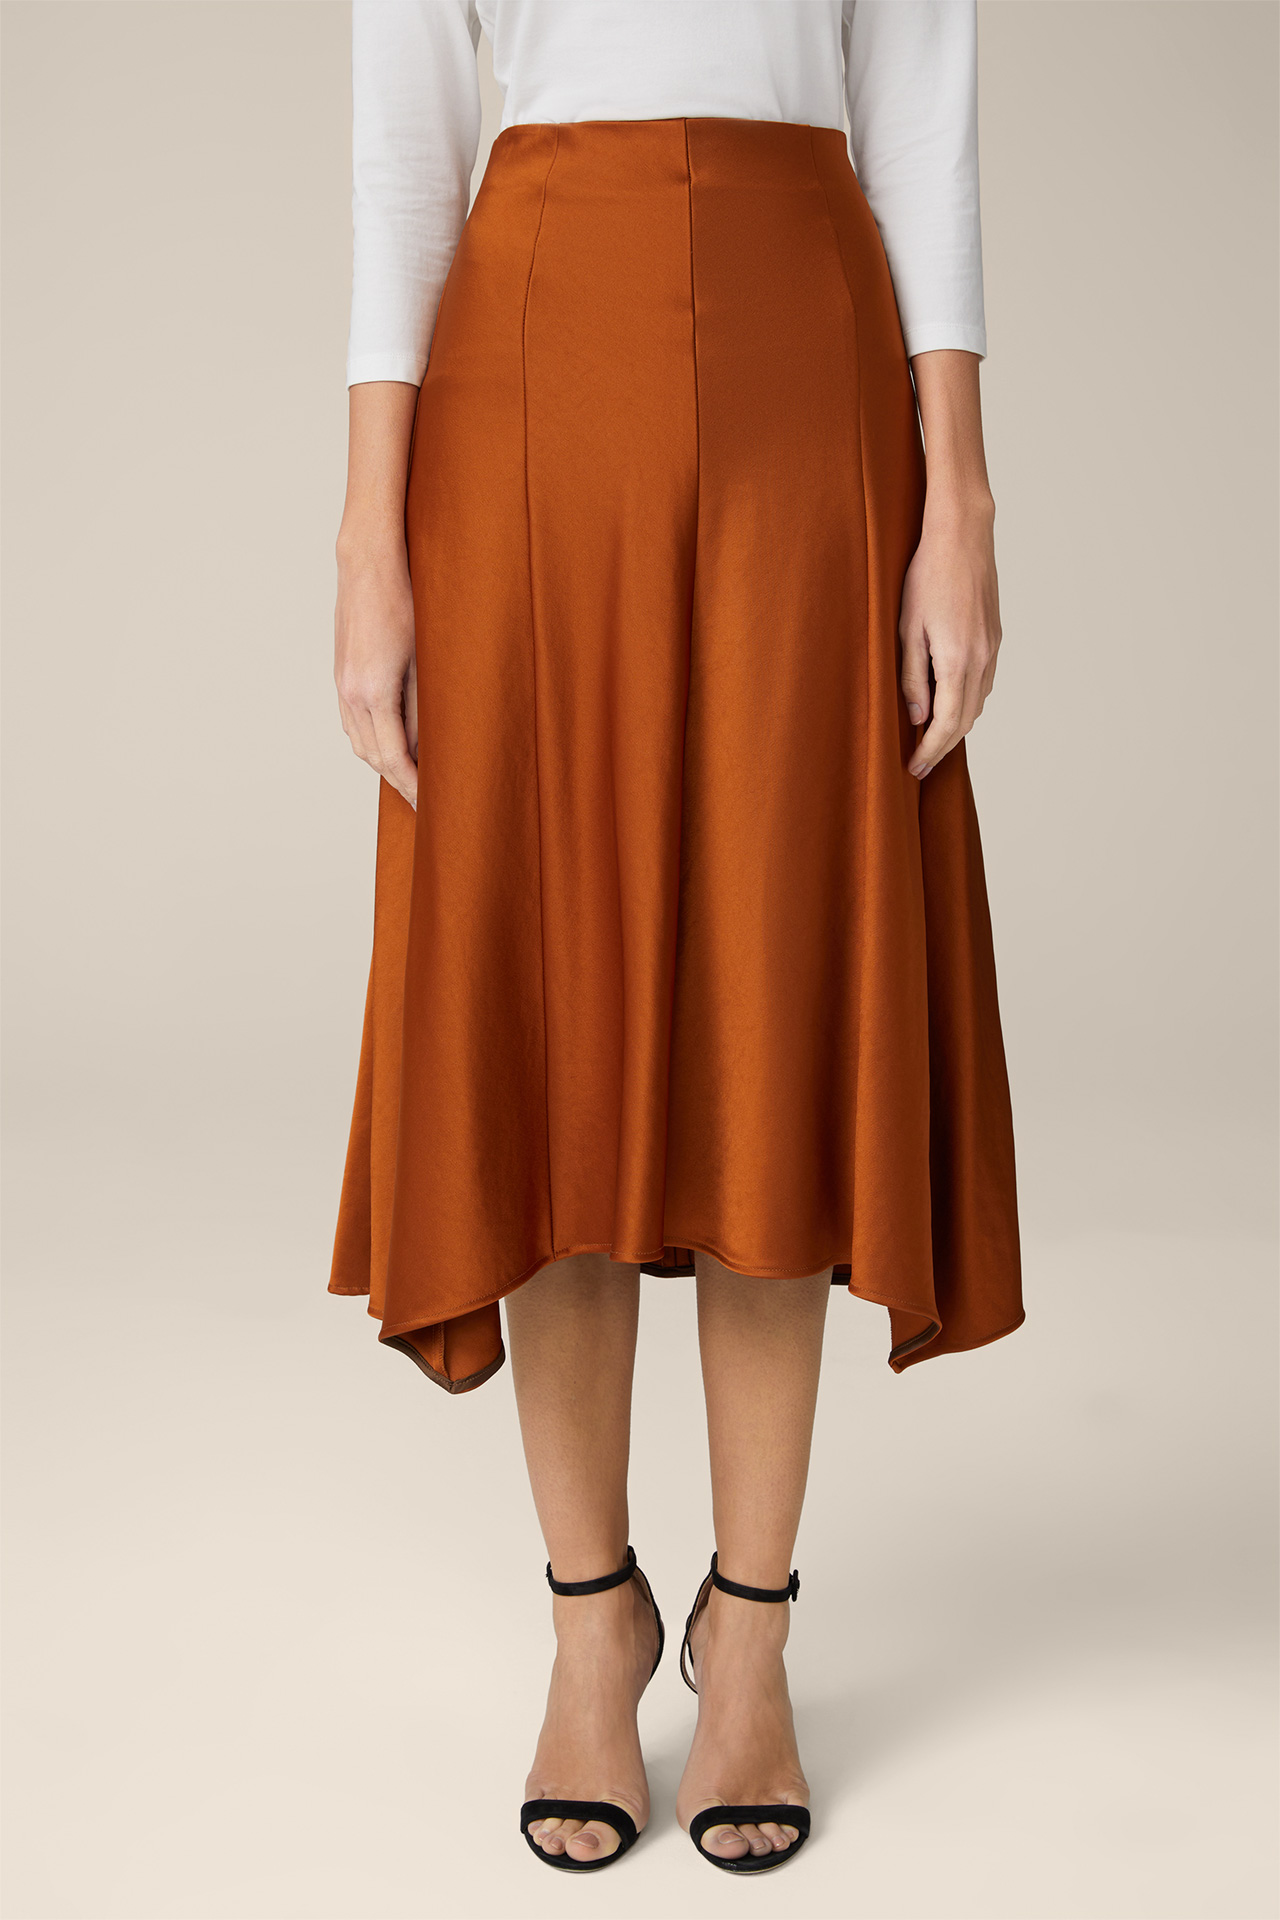 Midi-length Duchesse Satin Skirt in Copper